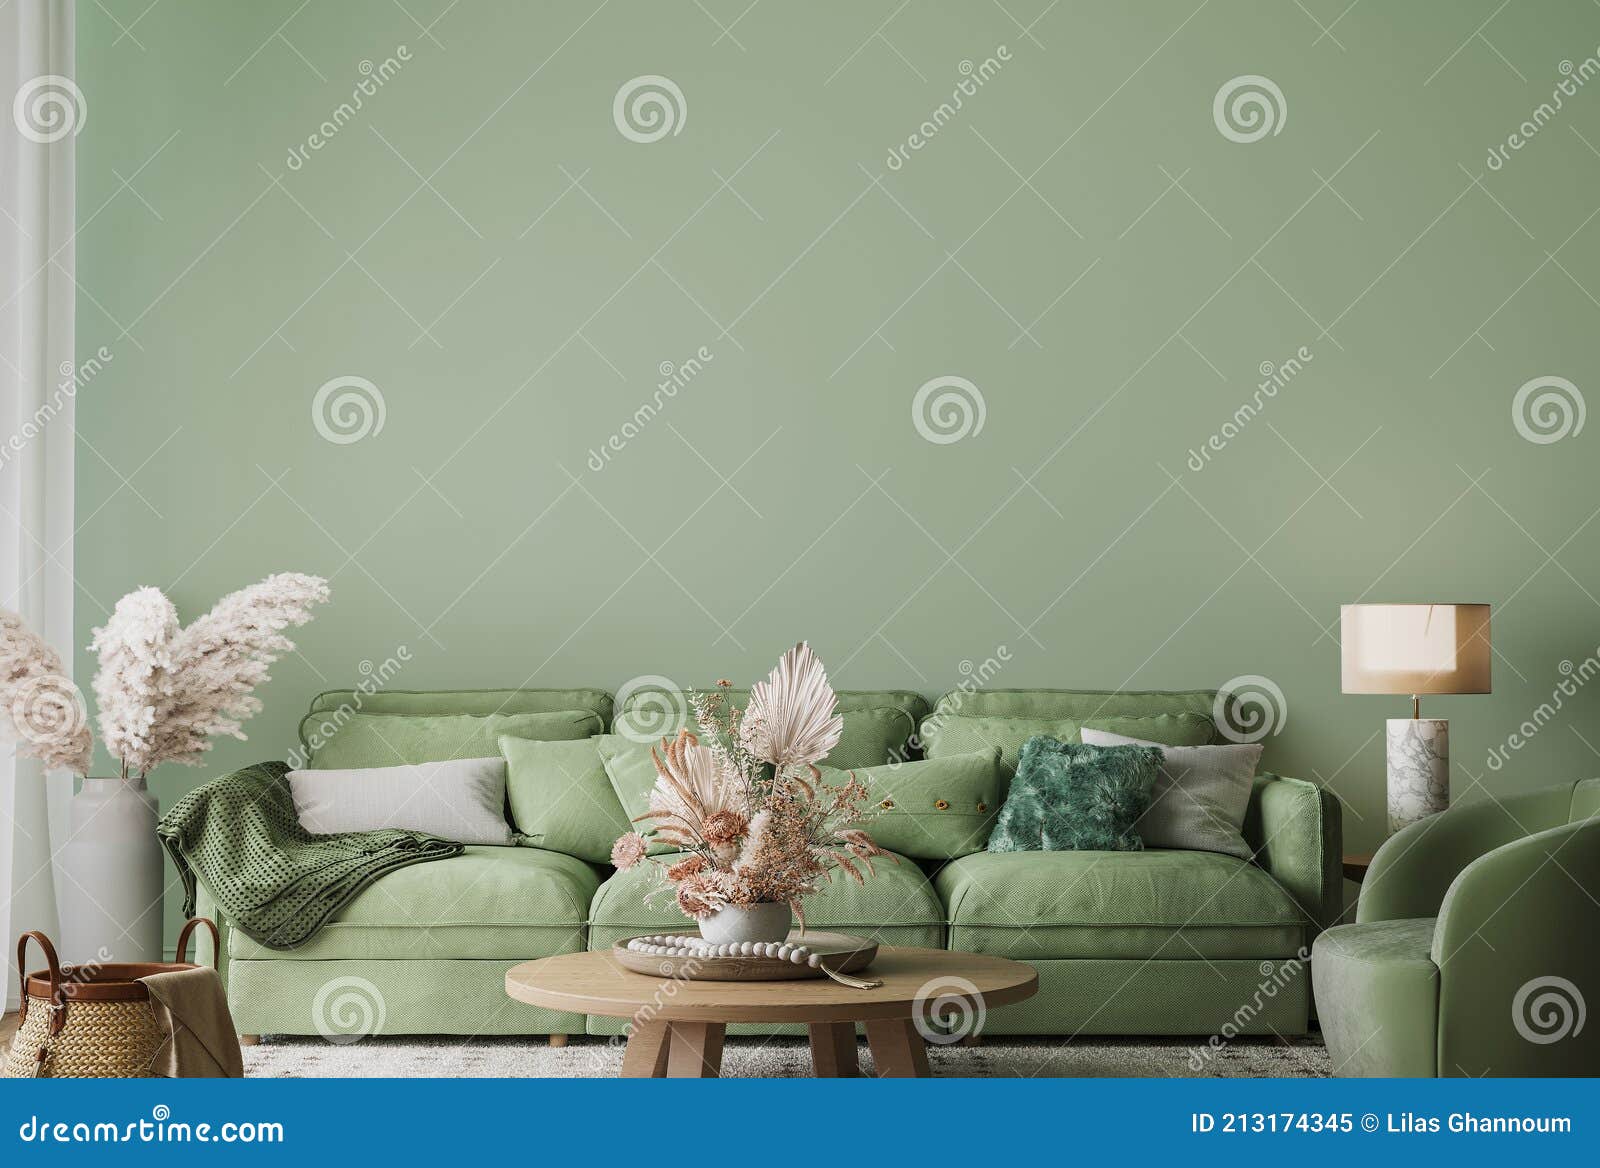 Cùng khám phá thiết kế phòng khách hiện đại với phông nền xanh lá cây! Gam màu đặc trưng này mang lại cảm giác thoải mái và thư giãn cho người sử dụng. Khi kết hợp với đồ nội thất đẹp mắt, không gian sống của bạn sẽ thật sự sống động và đáng yêu. Bấm vào ảnh ngay để khám phá!